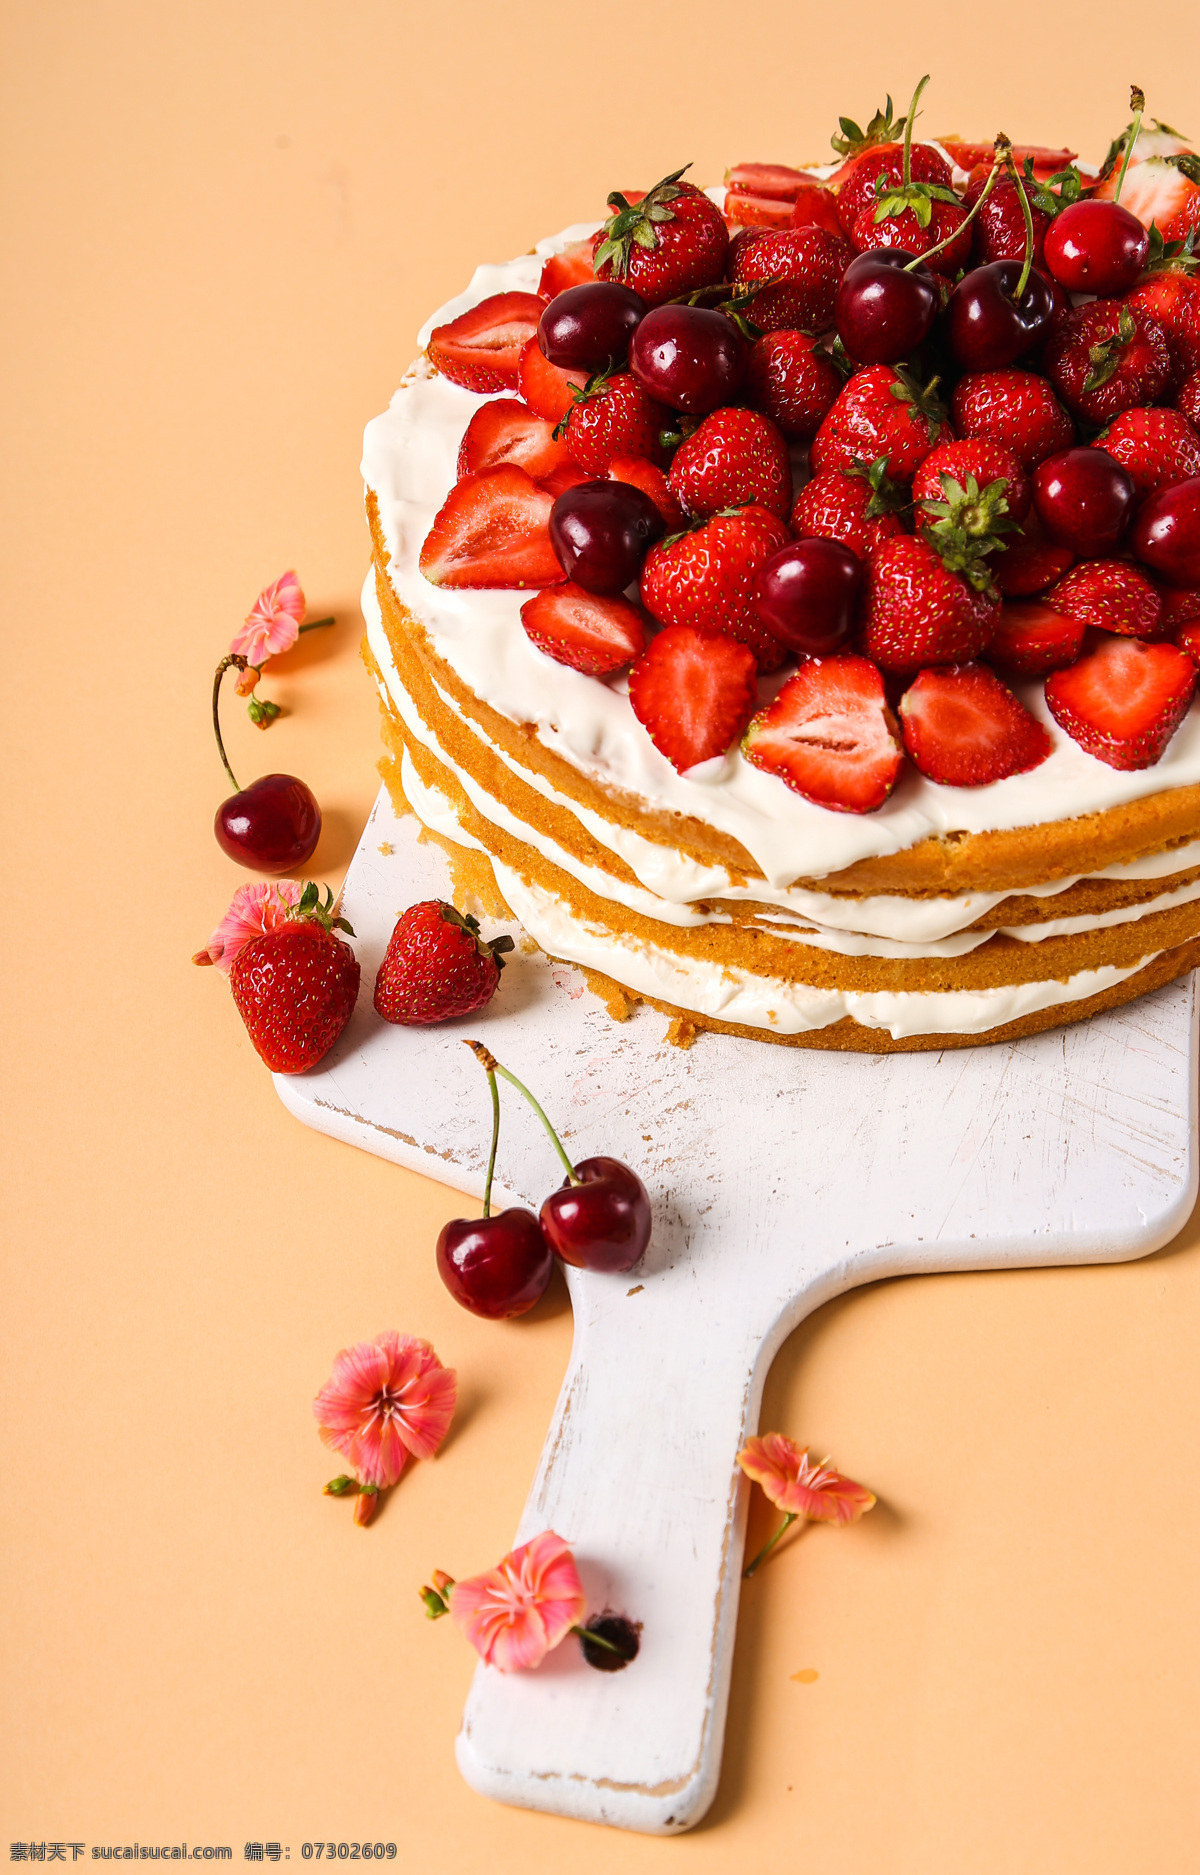 樱桃 草莓 蛋糕 草莓蛋糕 车厘子 水果蛋糕 甜品 美食 美味 食物摄影 生日蛋糕图片 餐饮美食